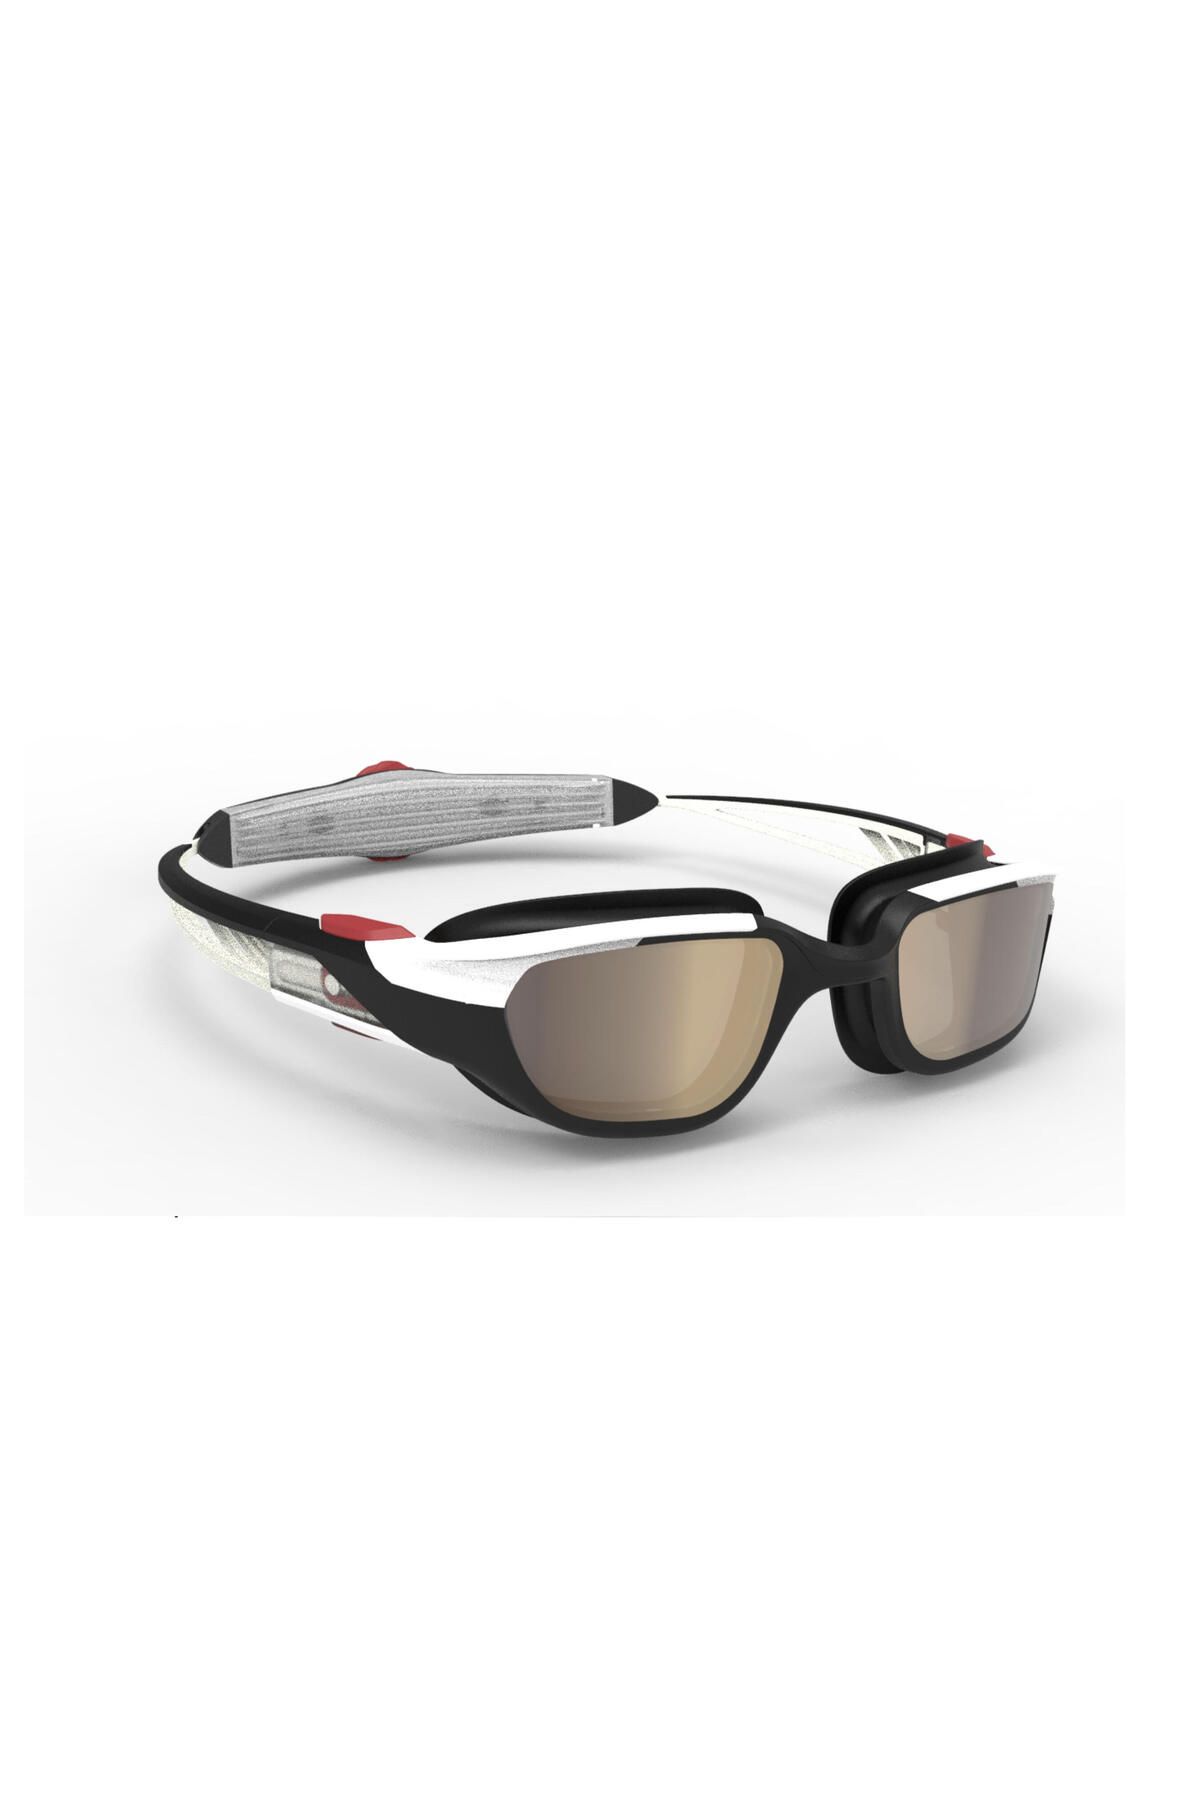 Decathlon Yüzücü Gözlüğü - L Boy - Beyaz / Siyah / Kırmızı - Aynalı Camlar - Turn